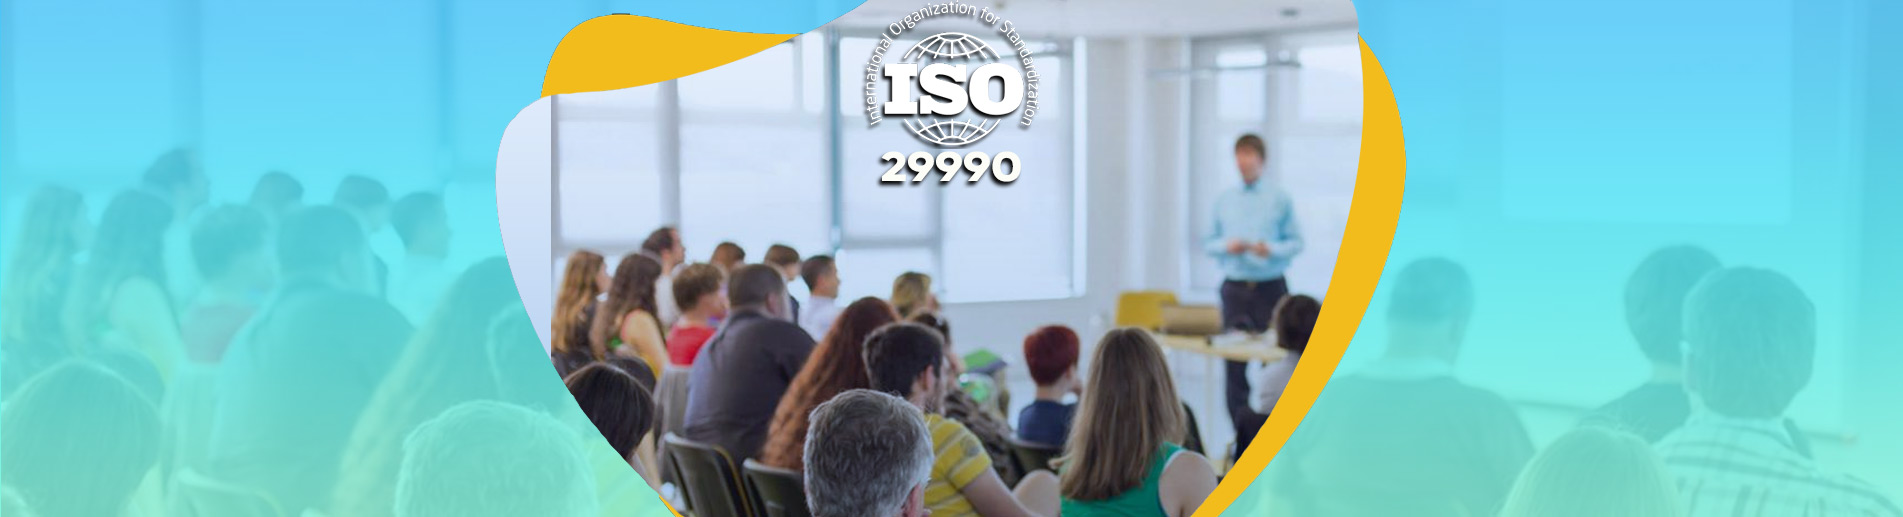 ISO 29990 Eğitim ve Öğretim Yönetim Sistemi